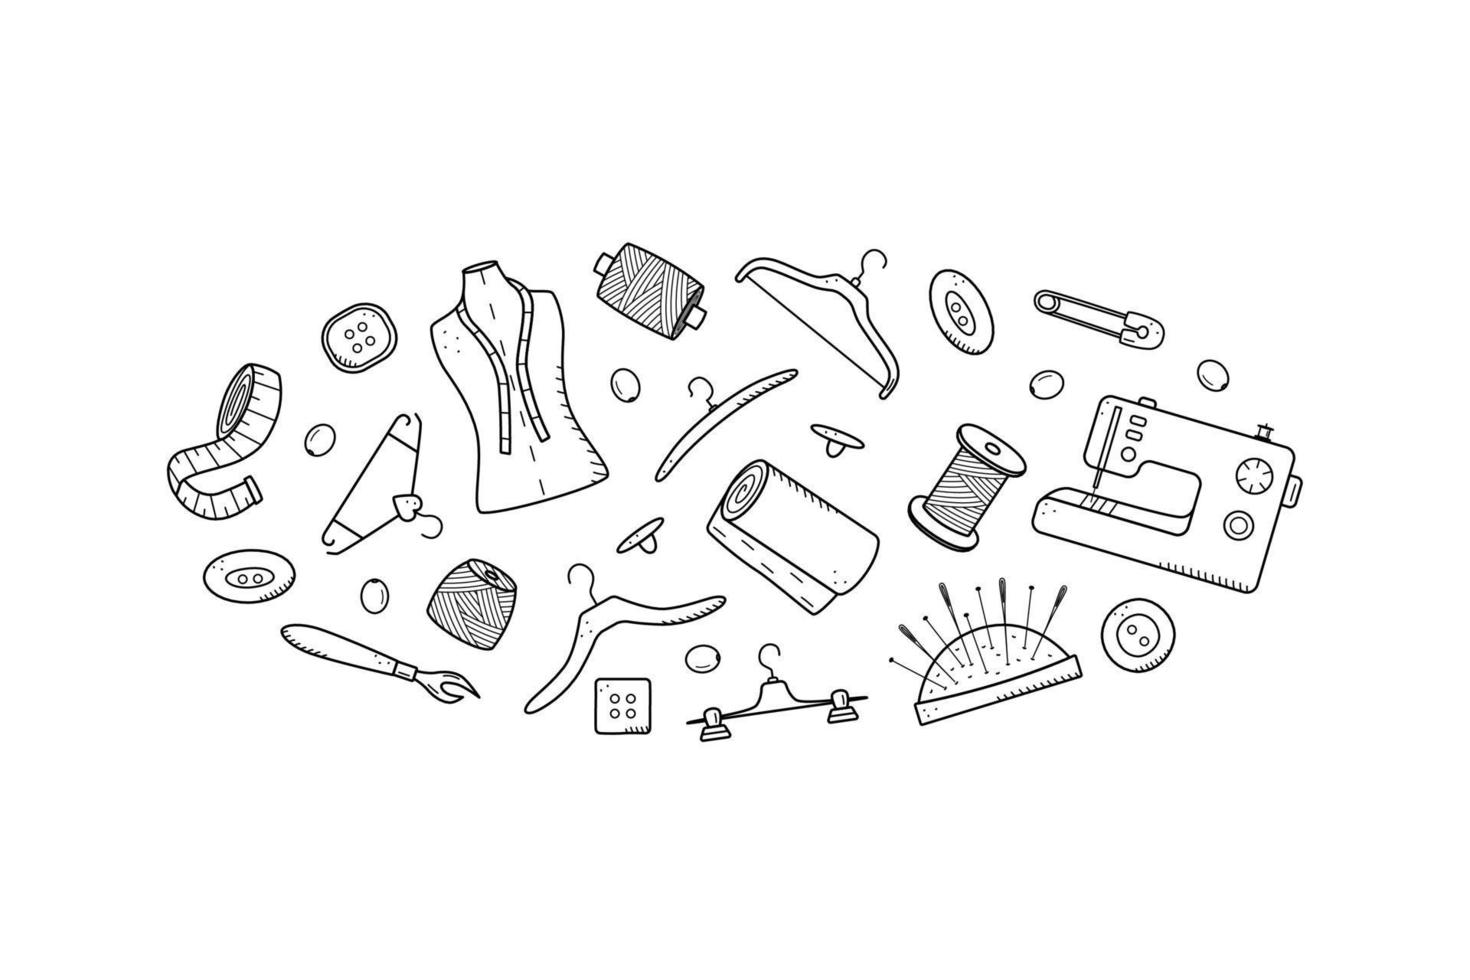 herramientas para coser y bordar. conjunto de iconos de fideos sastrería, ilustración vectorial agujas de hilo maniquí máquina de coser perchas botones vector